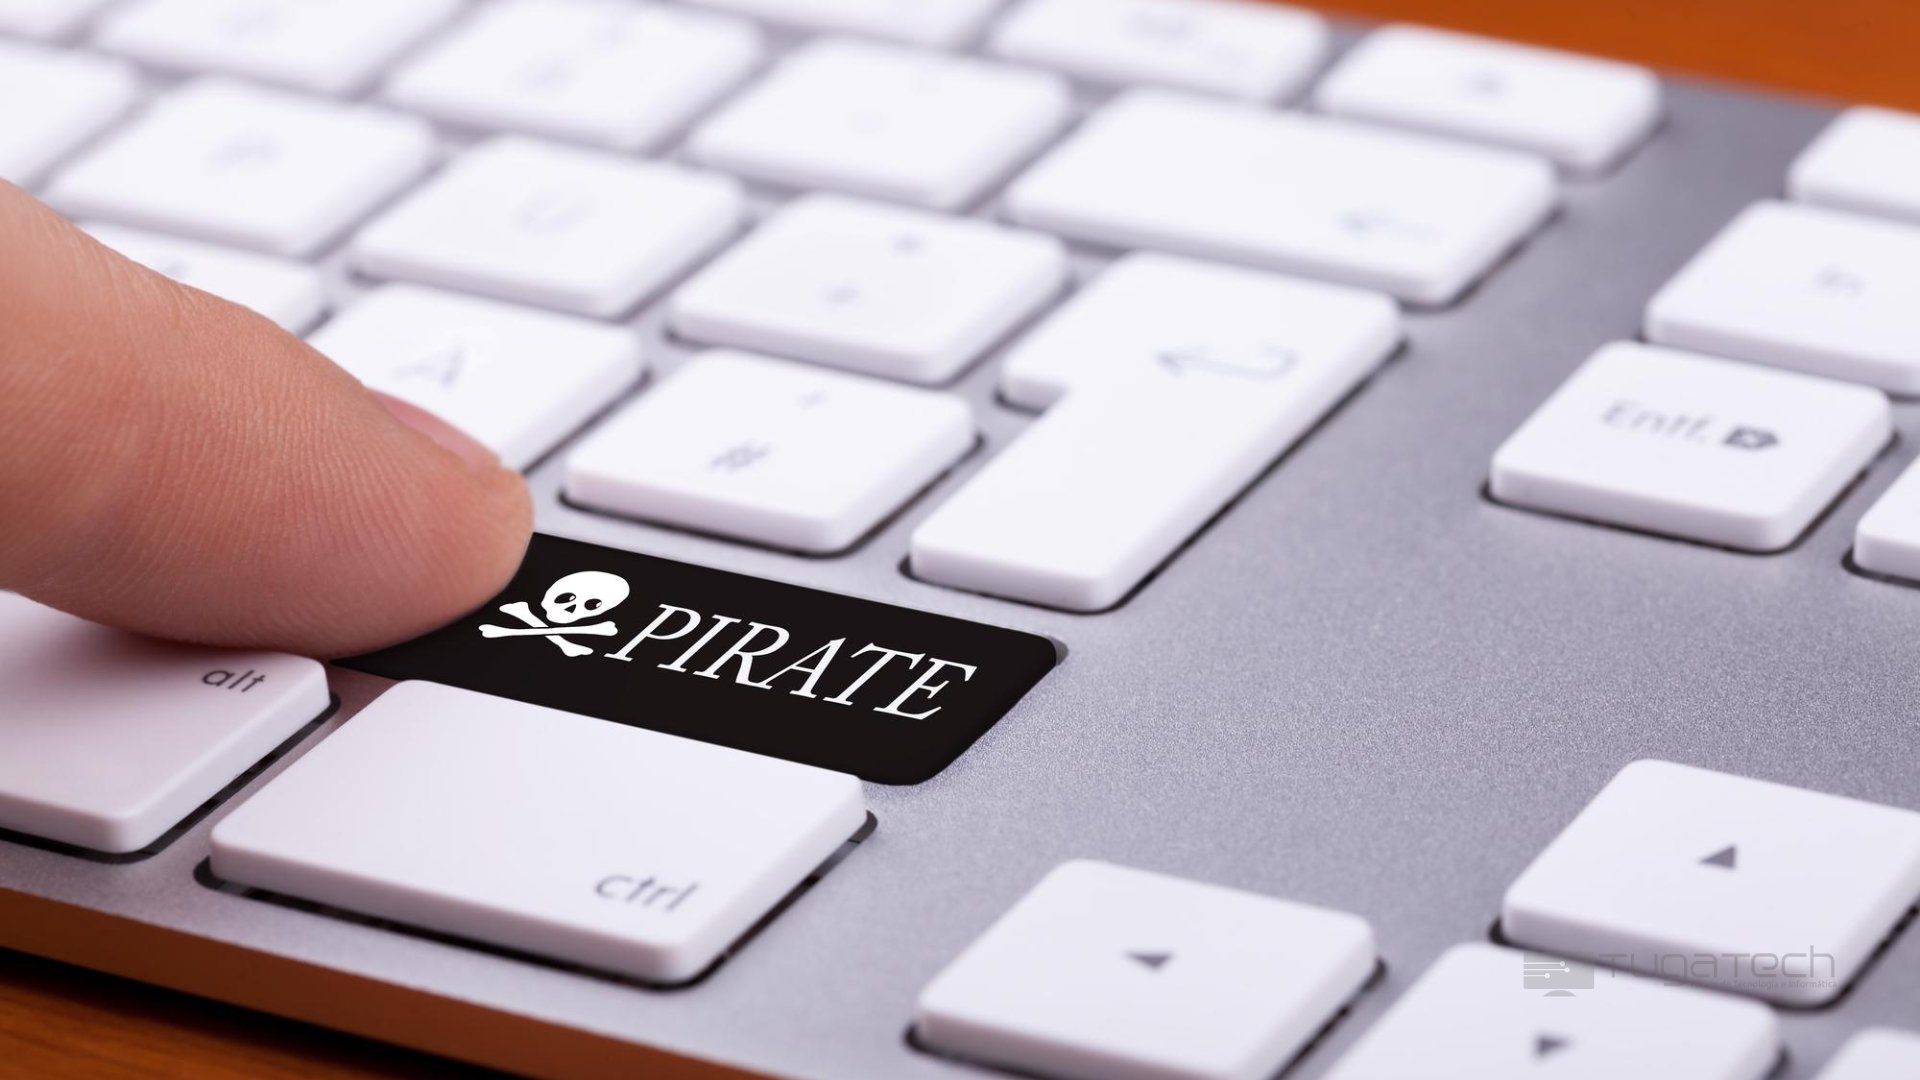 teclado com tecla de pirataria